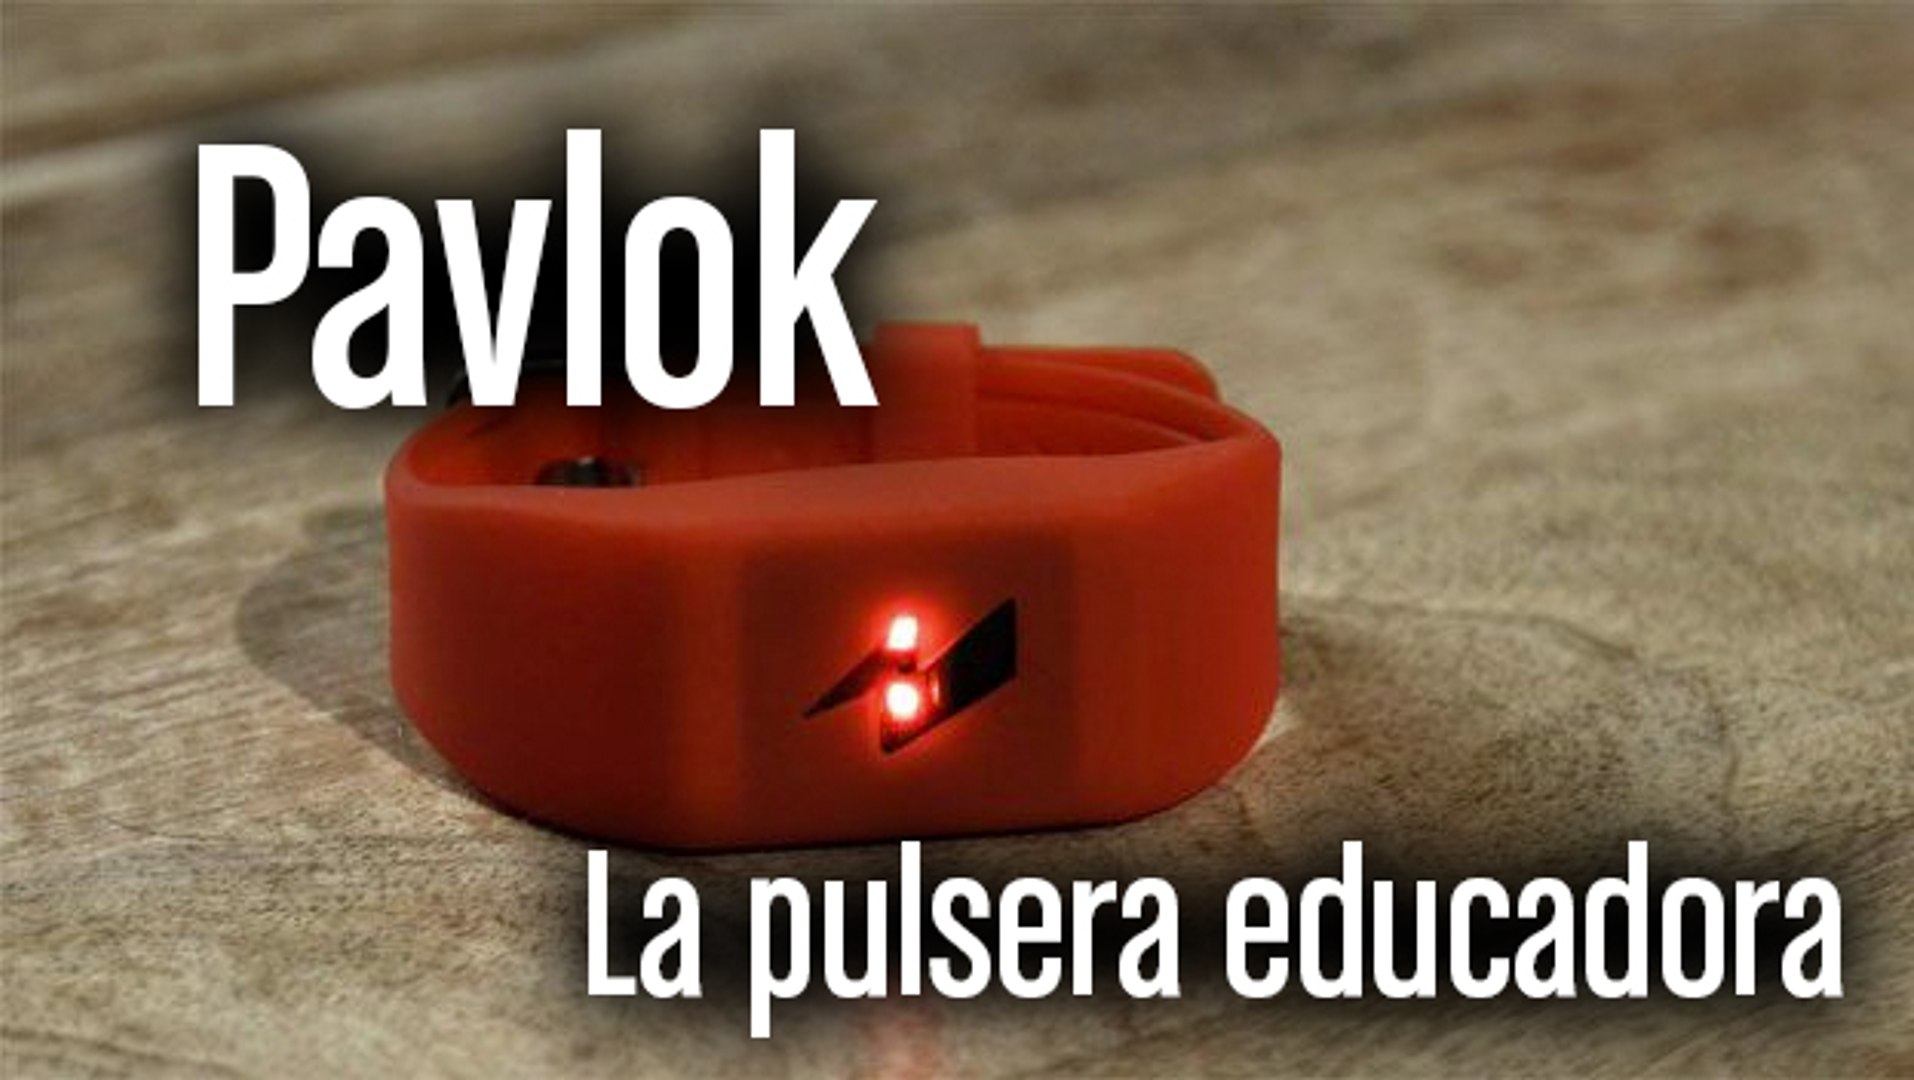 Pavlok: la pulsera educadora para adictos a las compras - Vídeo Dailymotion